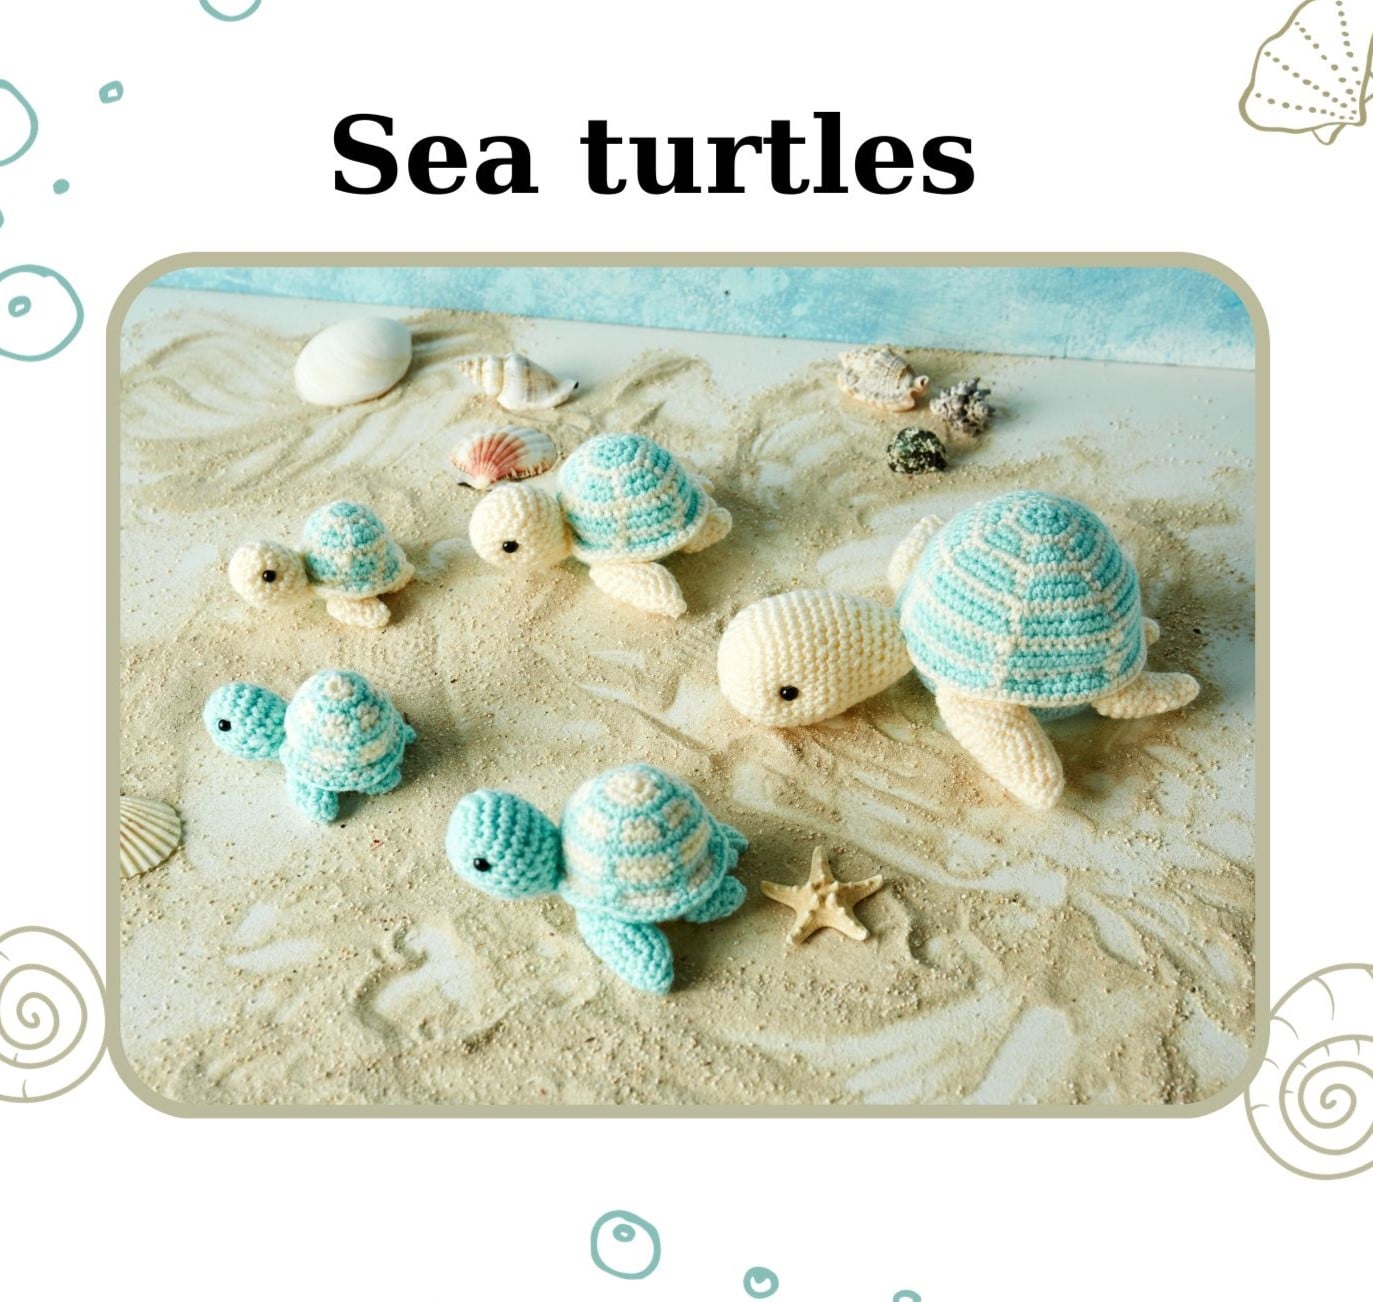 Sea turtles - 1